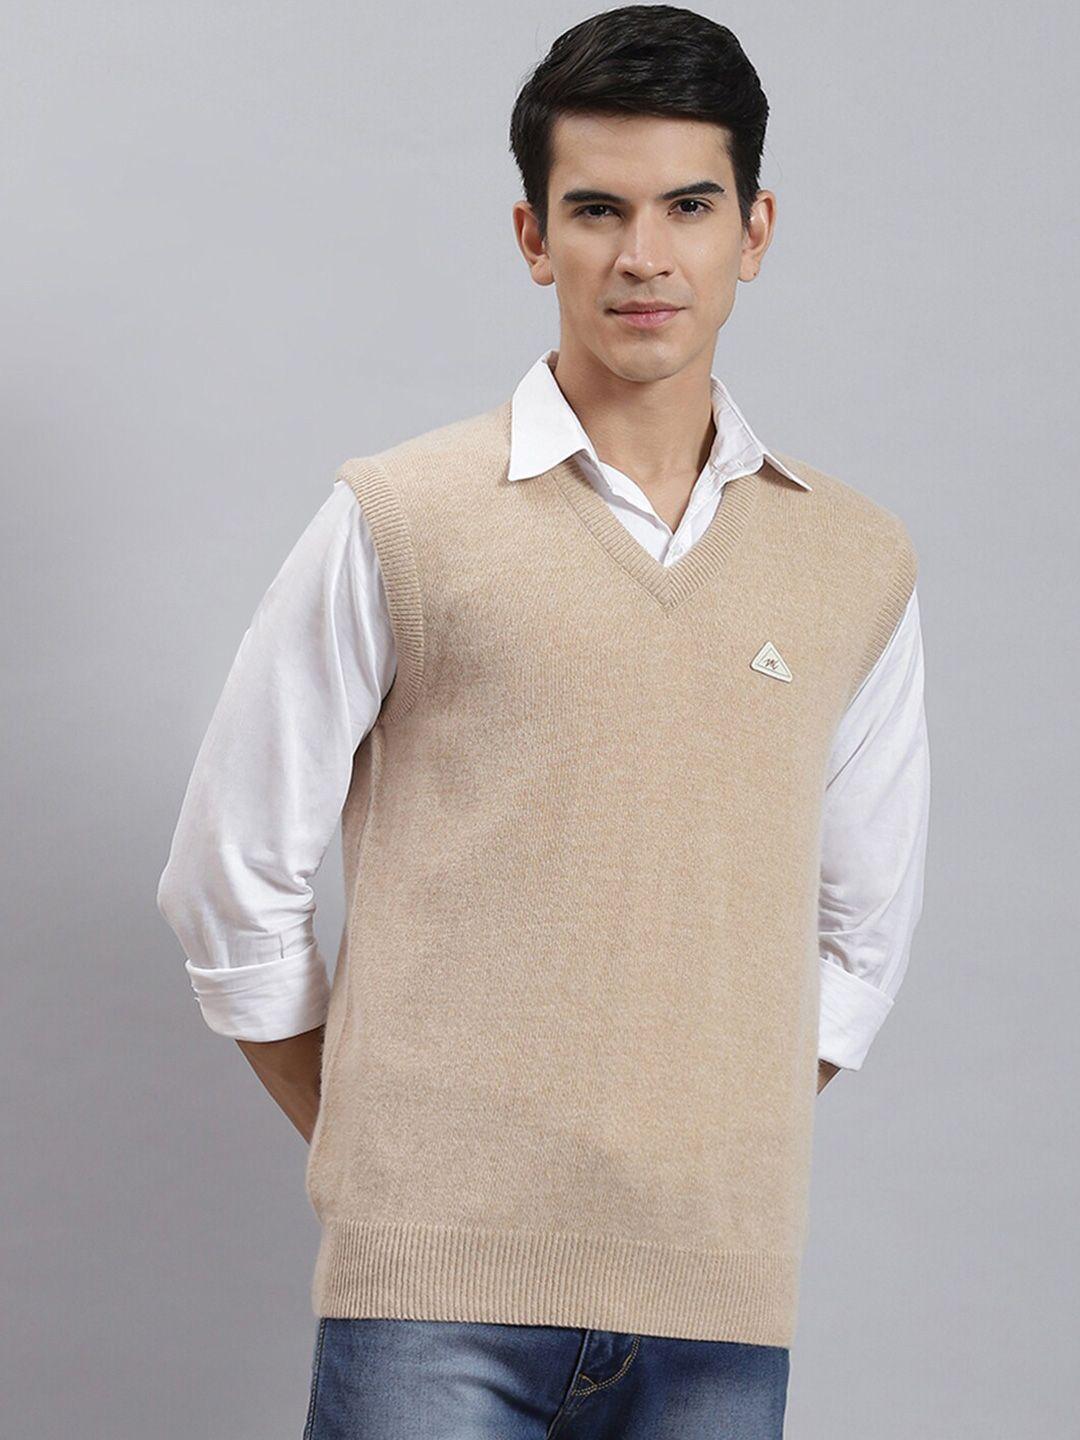 monte carlo v-neck woollen sweater vest